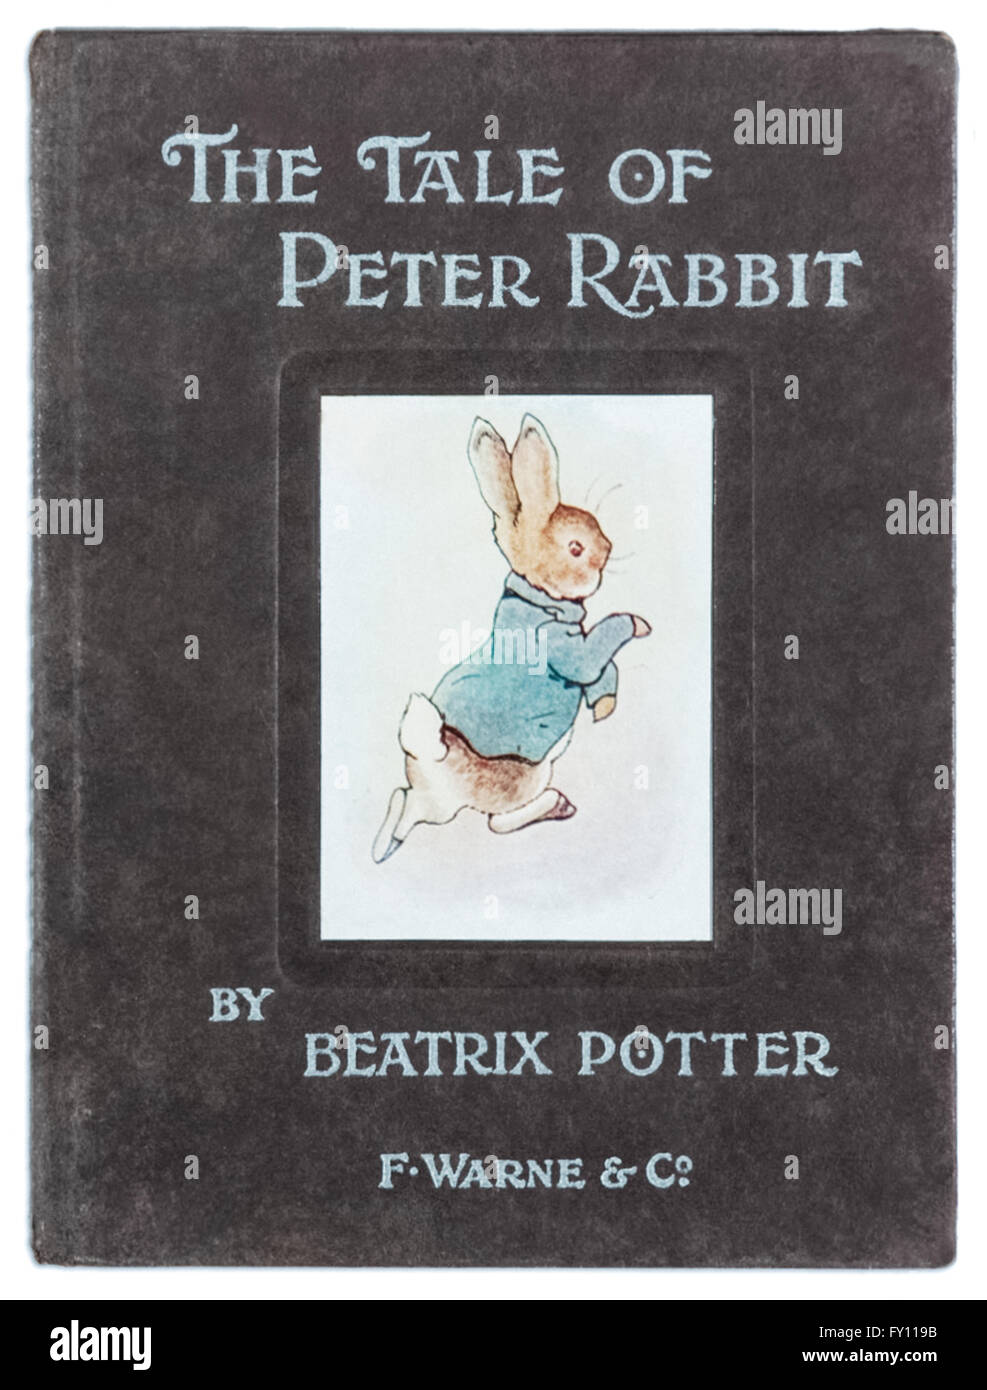 Titelseite der "The Tale of Peter Rabbit" von Beatrix Potter (1866-1943), erste kommerzielle Ausgabe von F. Warne & Co. 1902 veröffentlicht. Siehe Beschreibung für mehr Informationen. Stockfoto